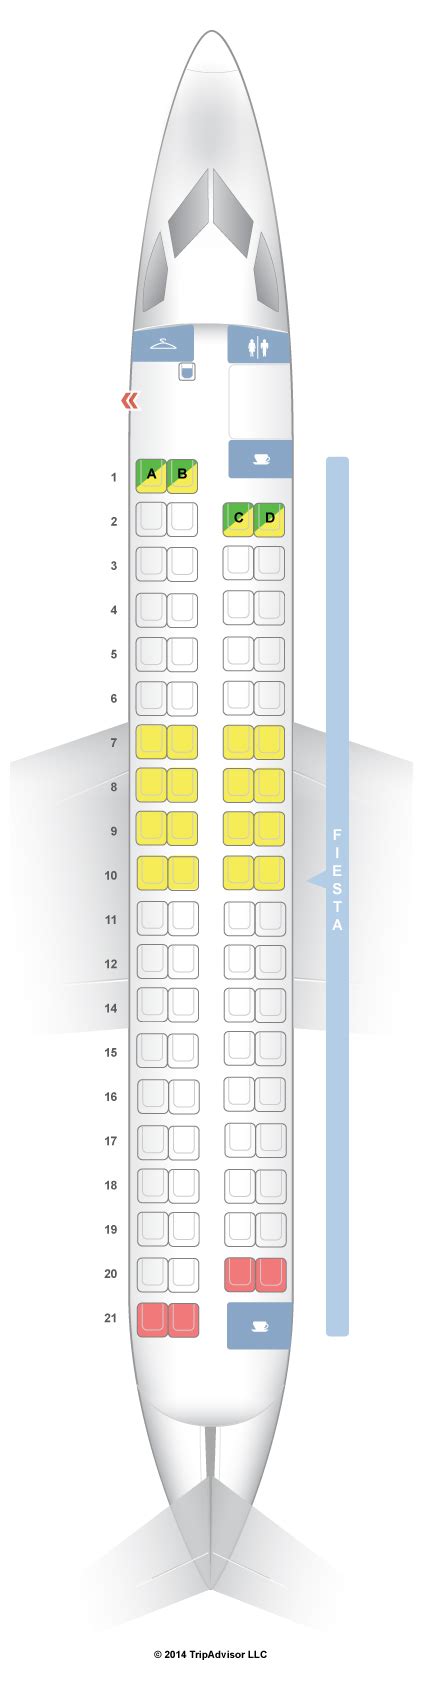 Seatguru Philippine Airlines Seat Map Philippine Airlines Airbus A330